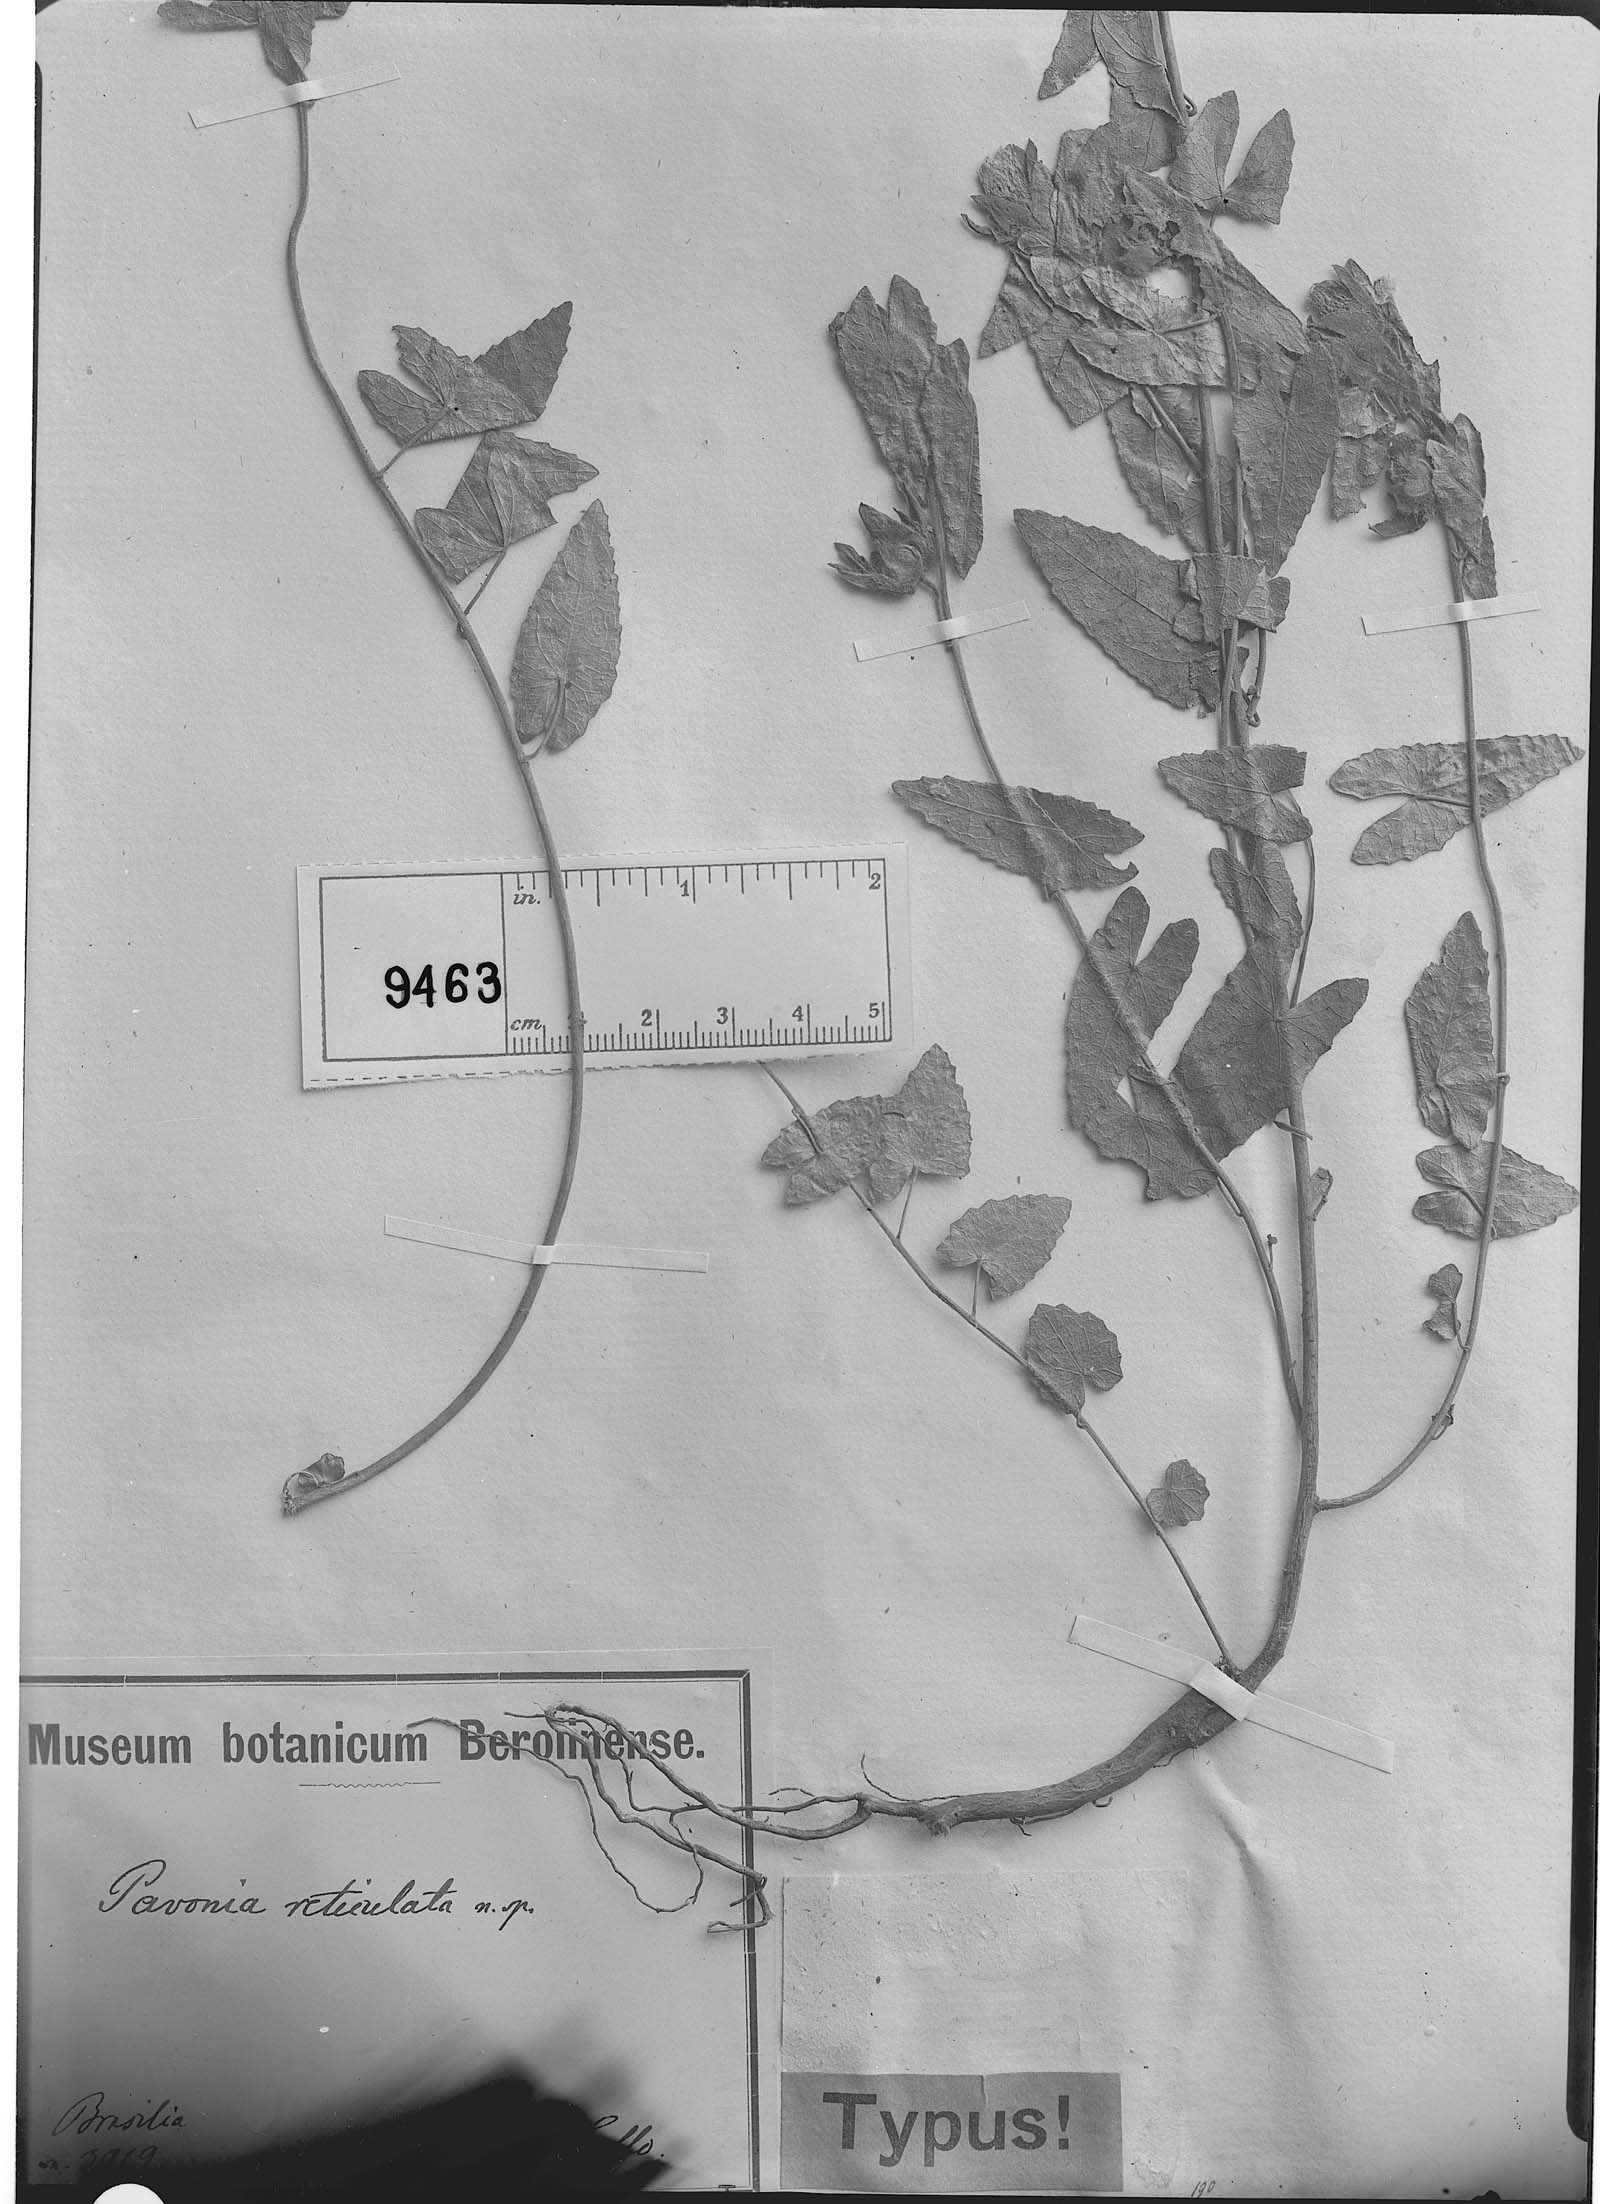 Pavonia reticulata image